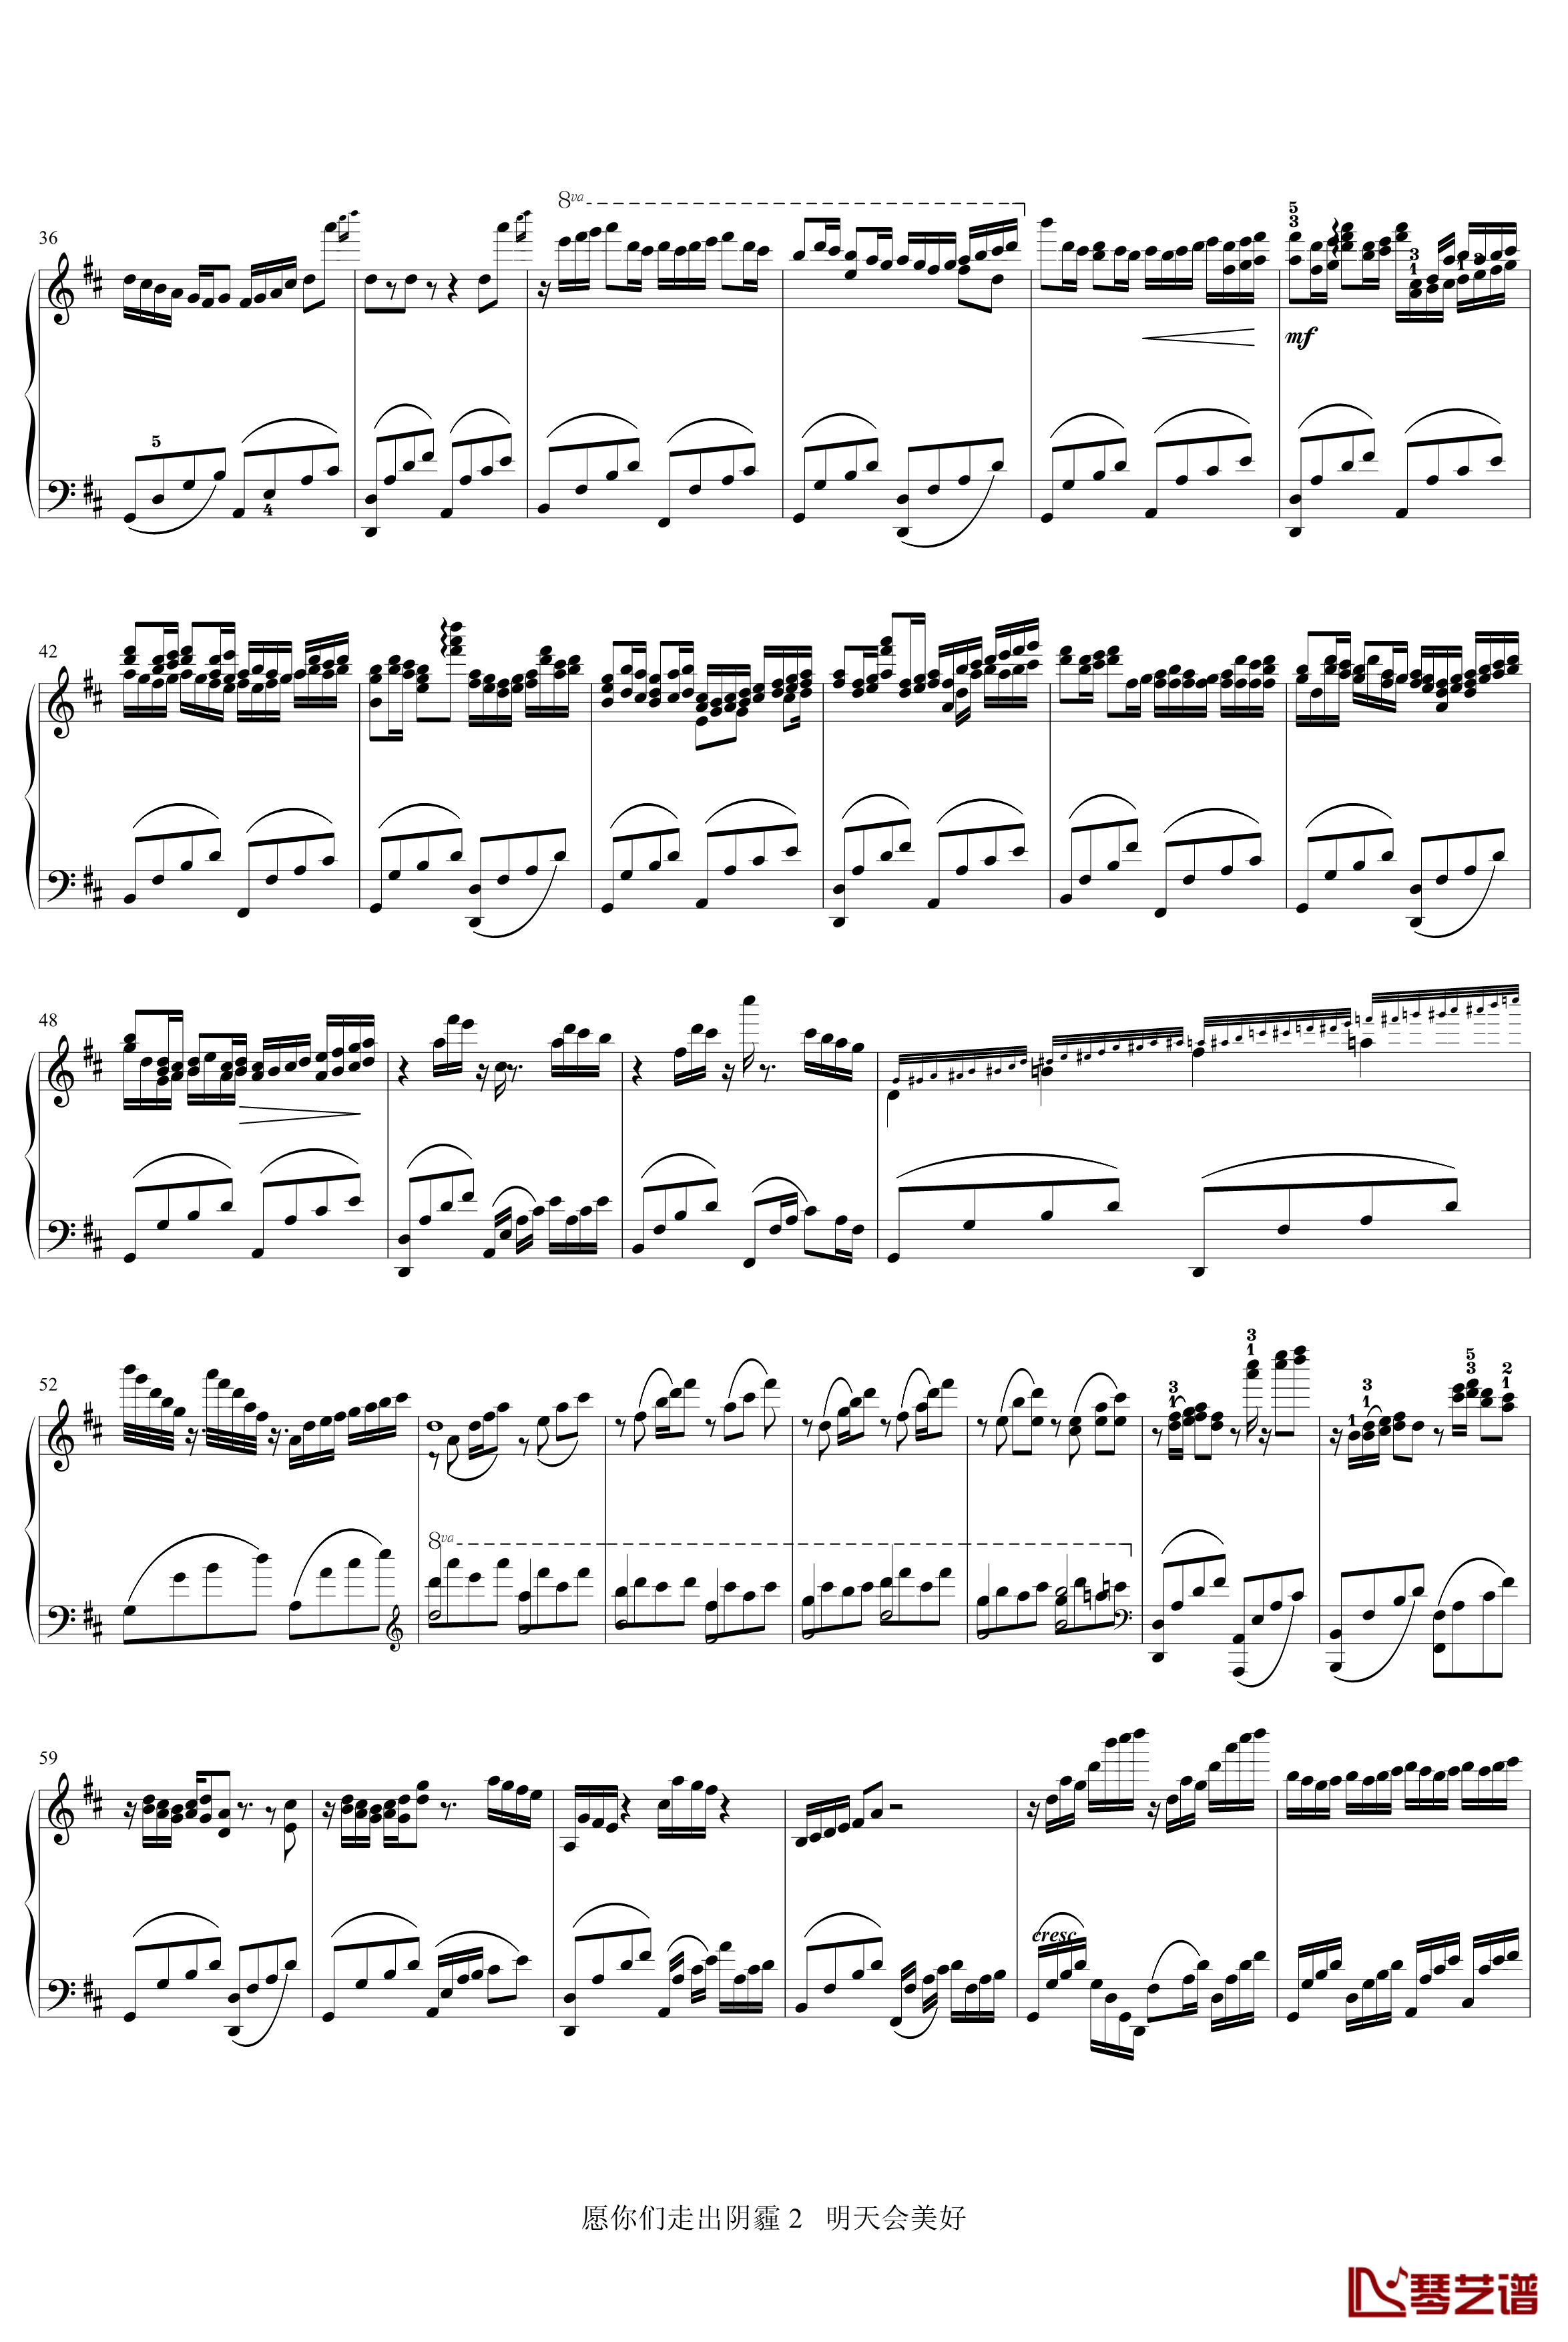 卡农主题变奏曲钢琴谱-帕赫贝尔-Pachelbel2